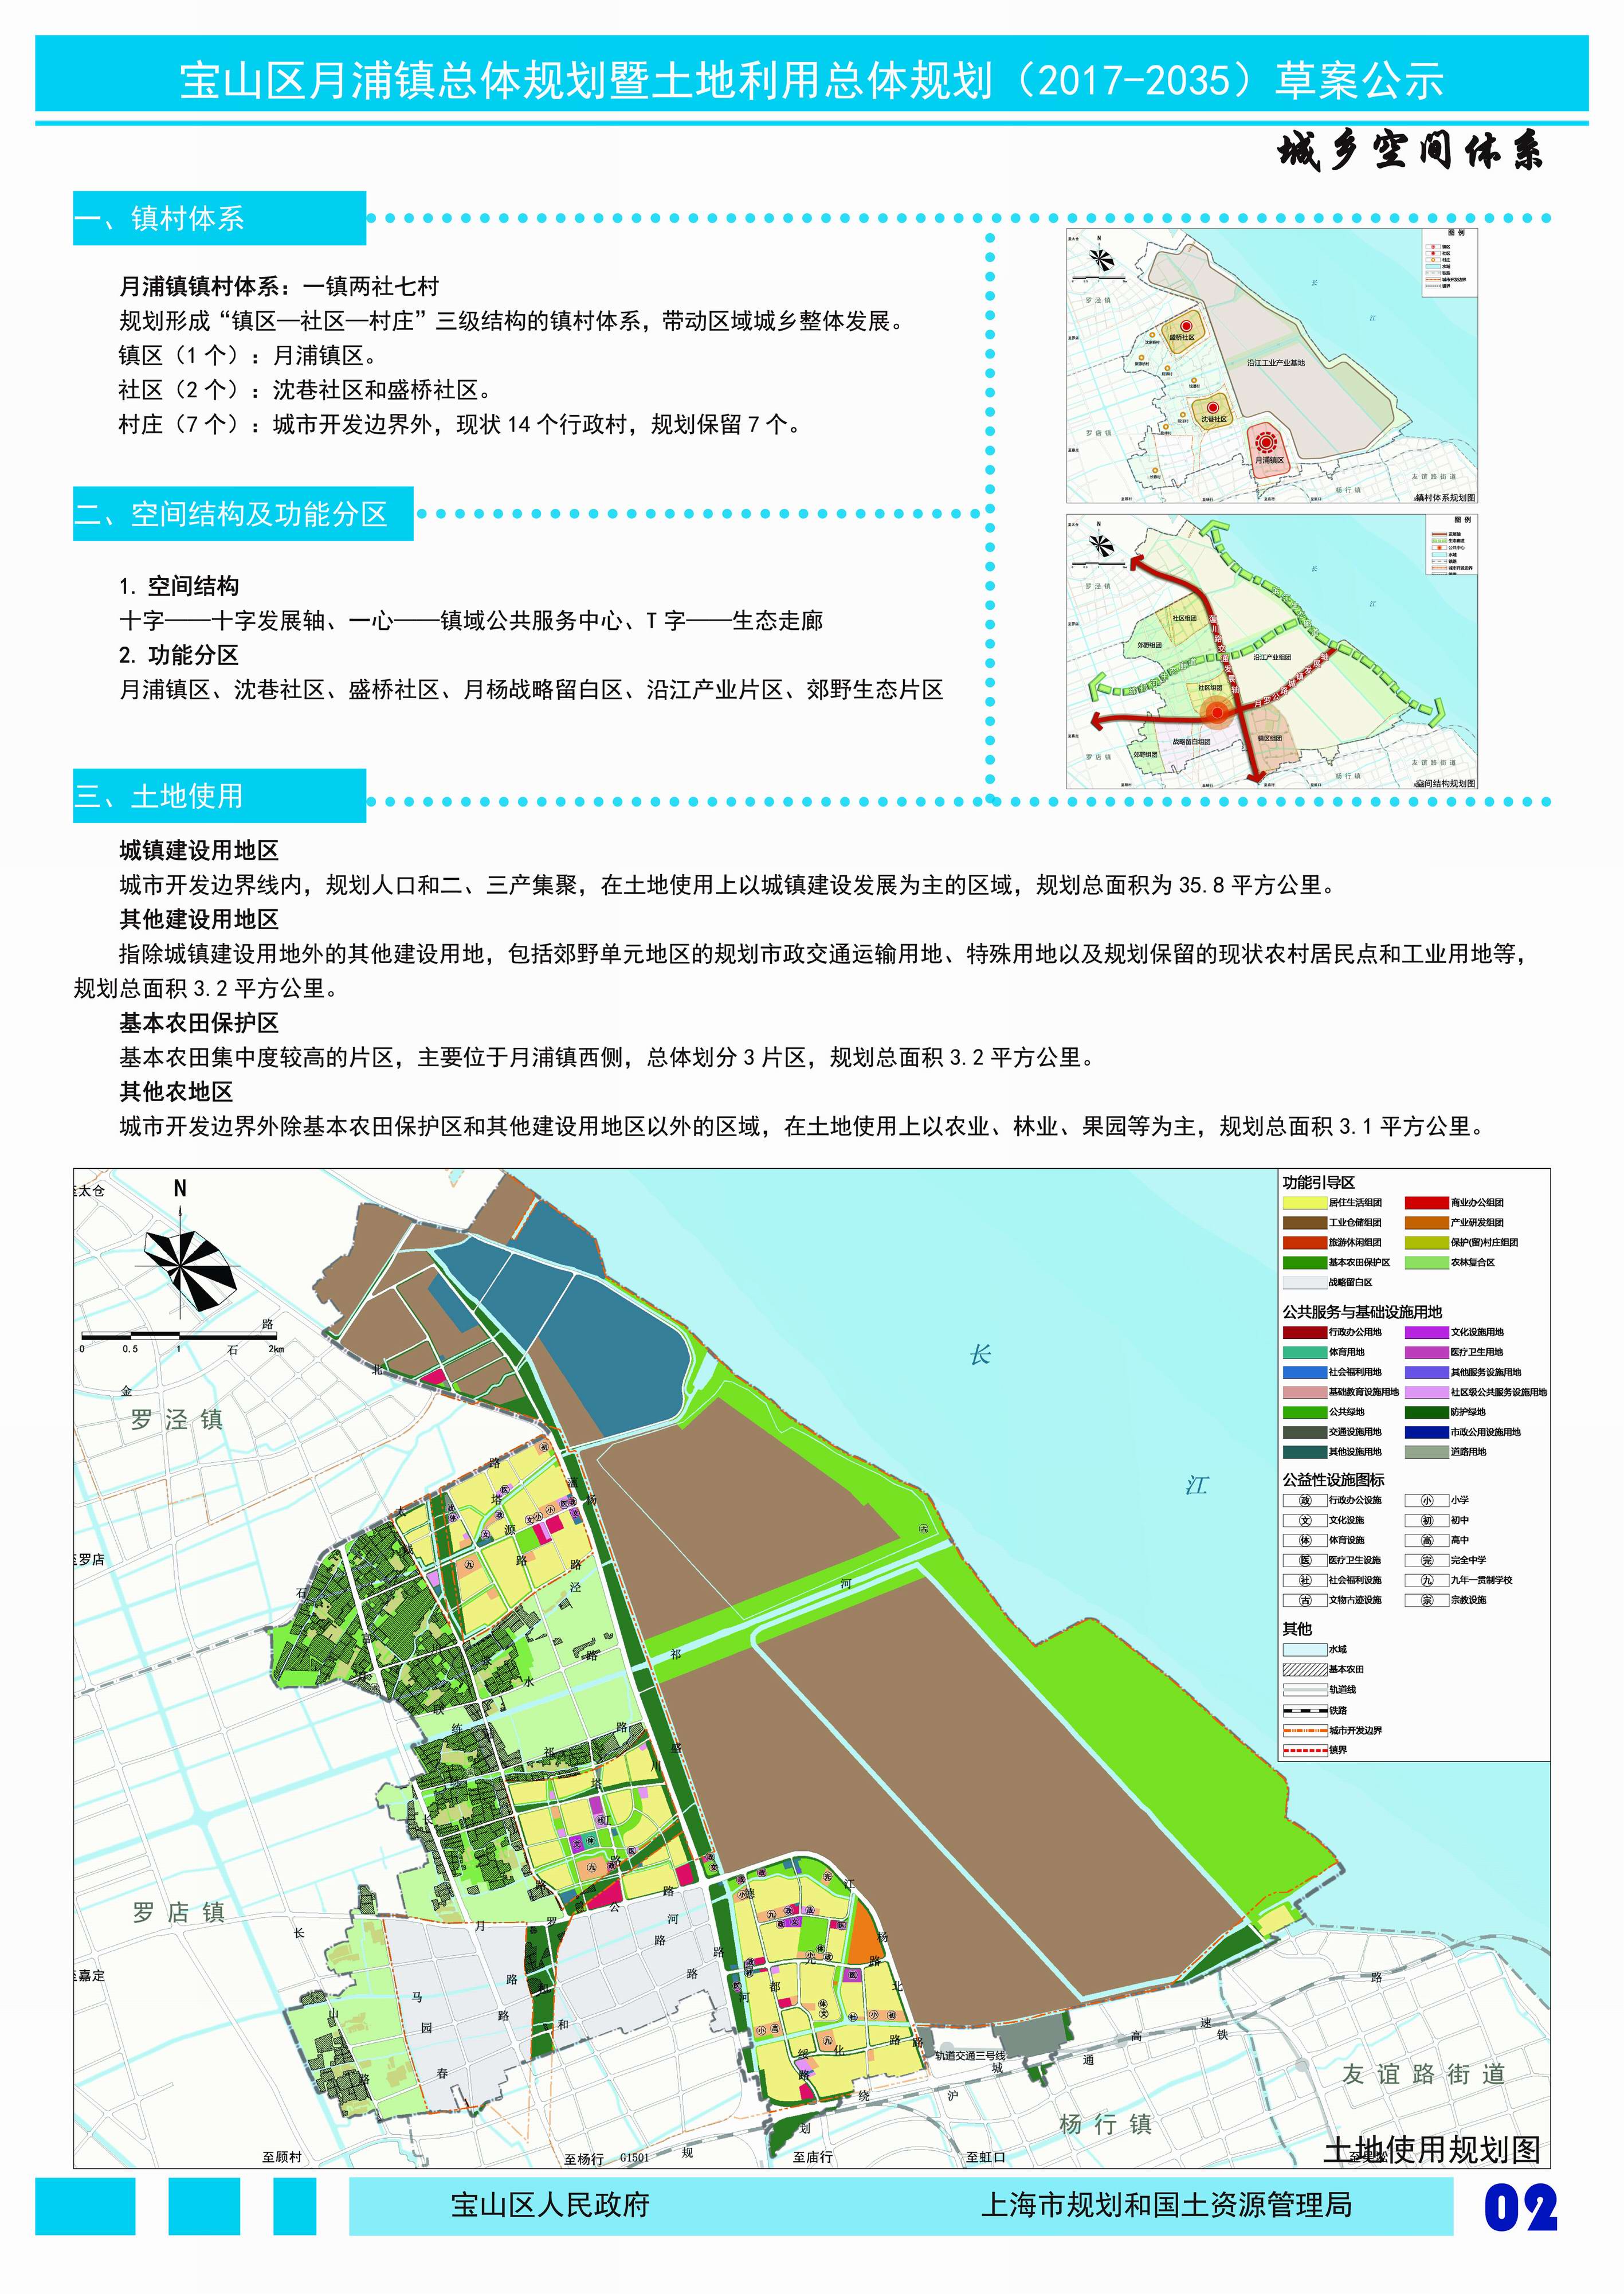 关于《宝山区月浦镇区总体规划暨土地利用总体规划》(2017-2035)公示